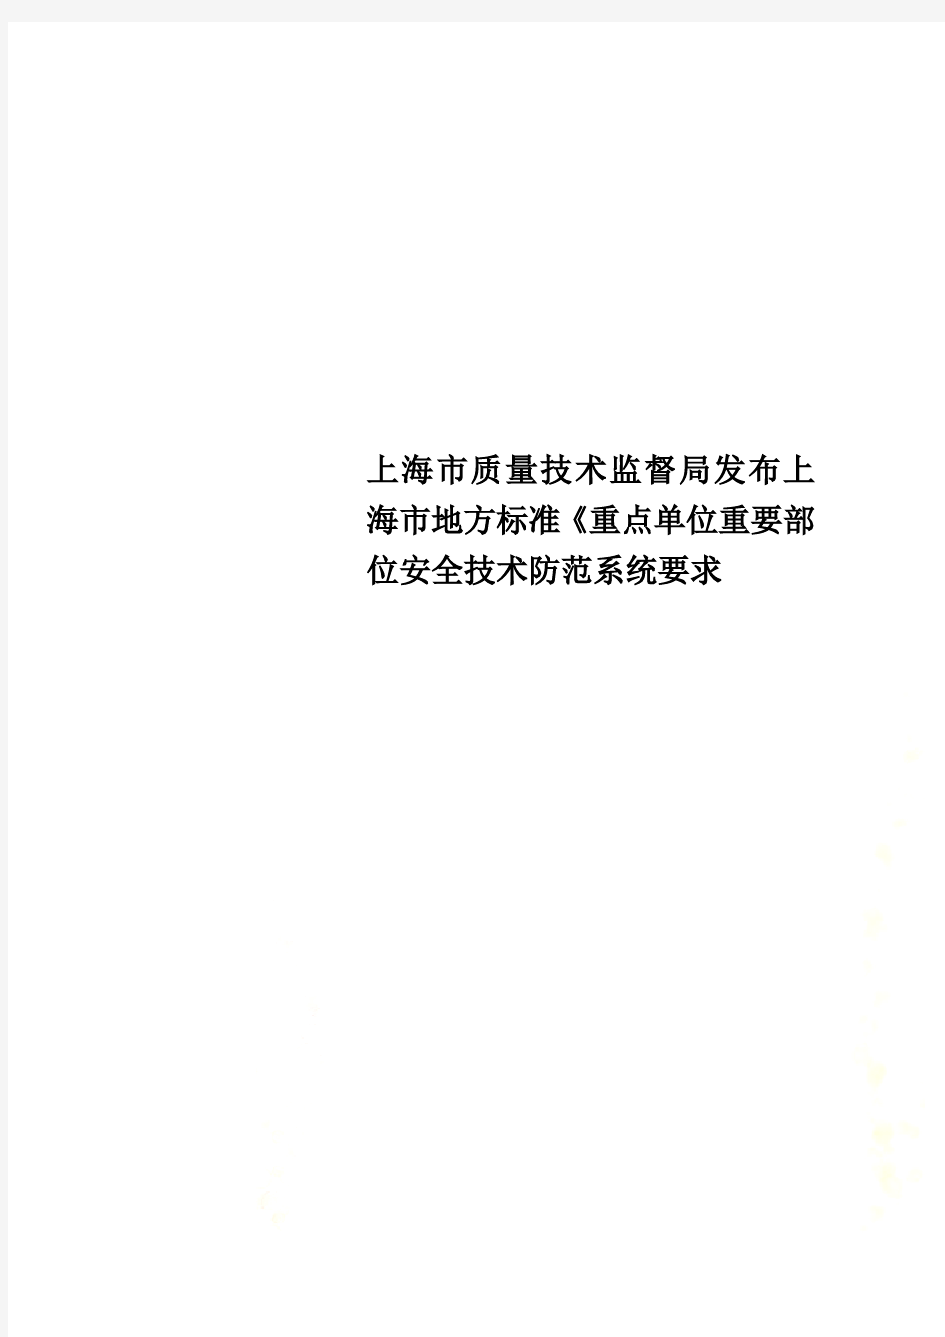 上海市质量技术监督局发布上海市地方标准《重点单位重要部位安全技术防范系统要求